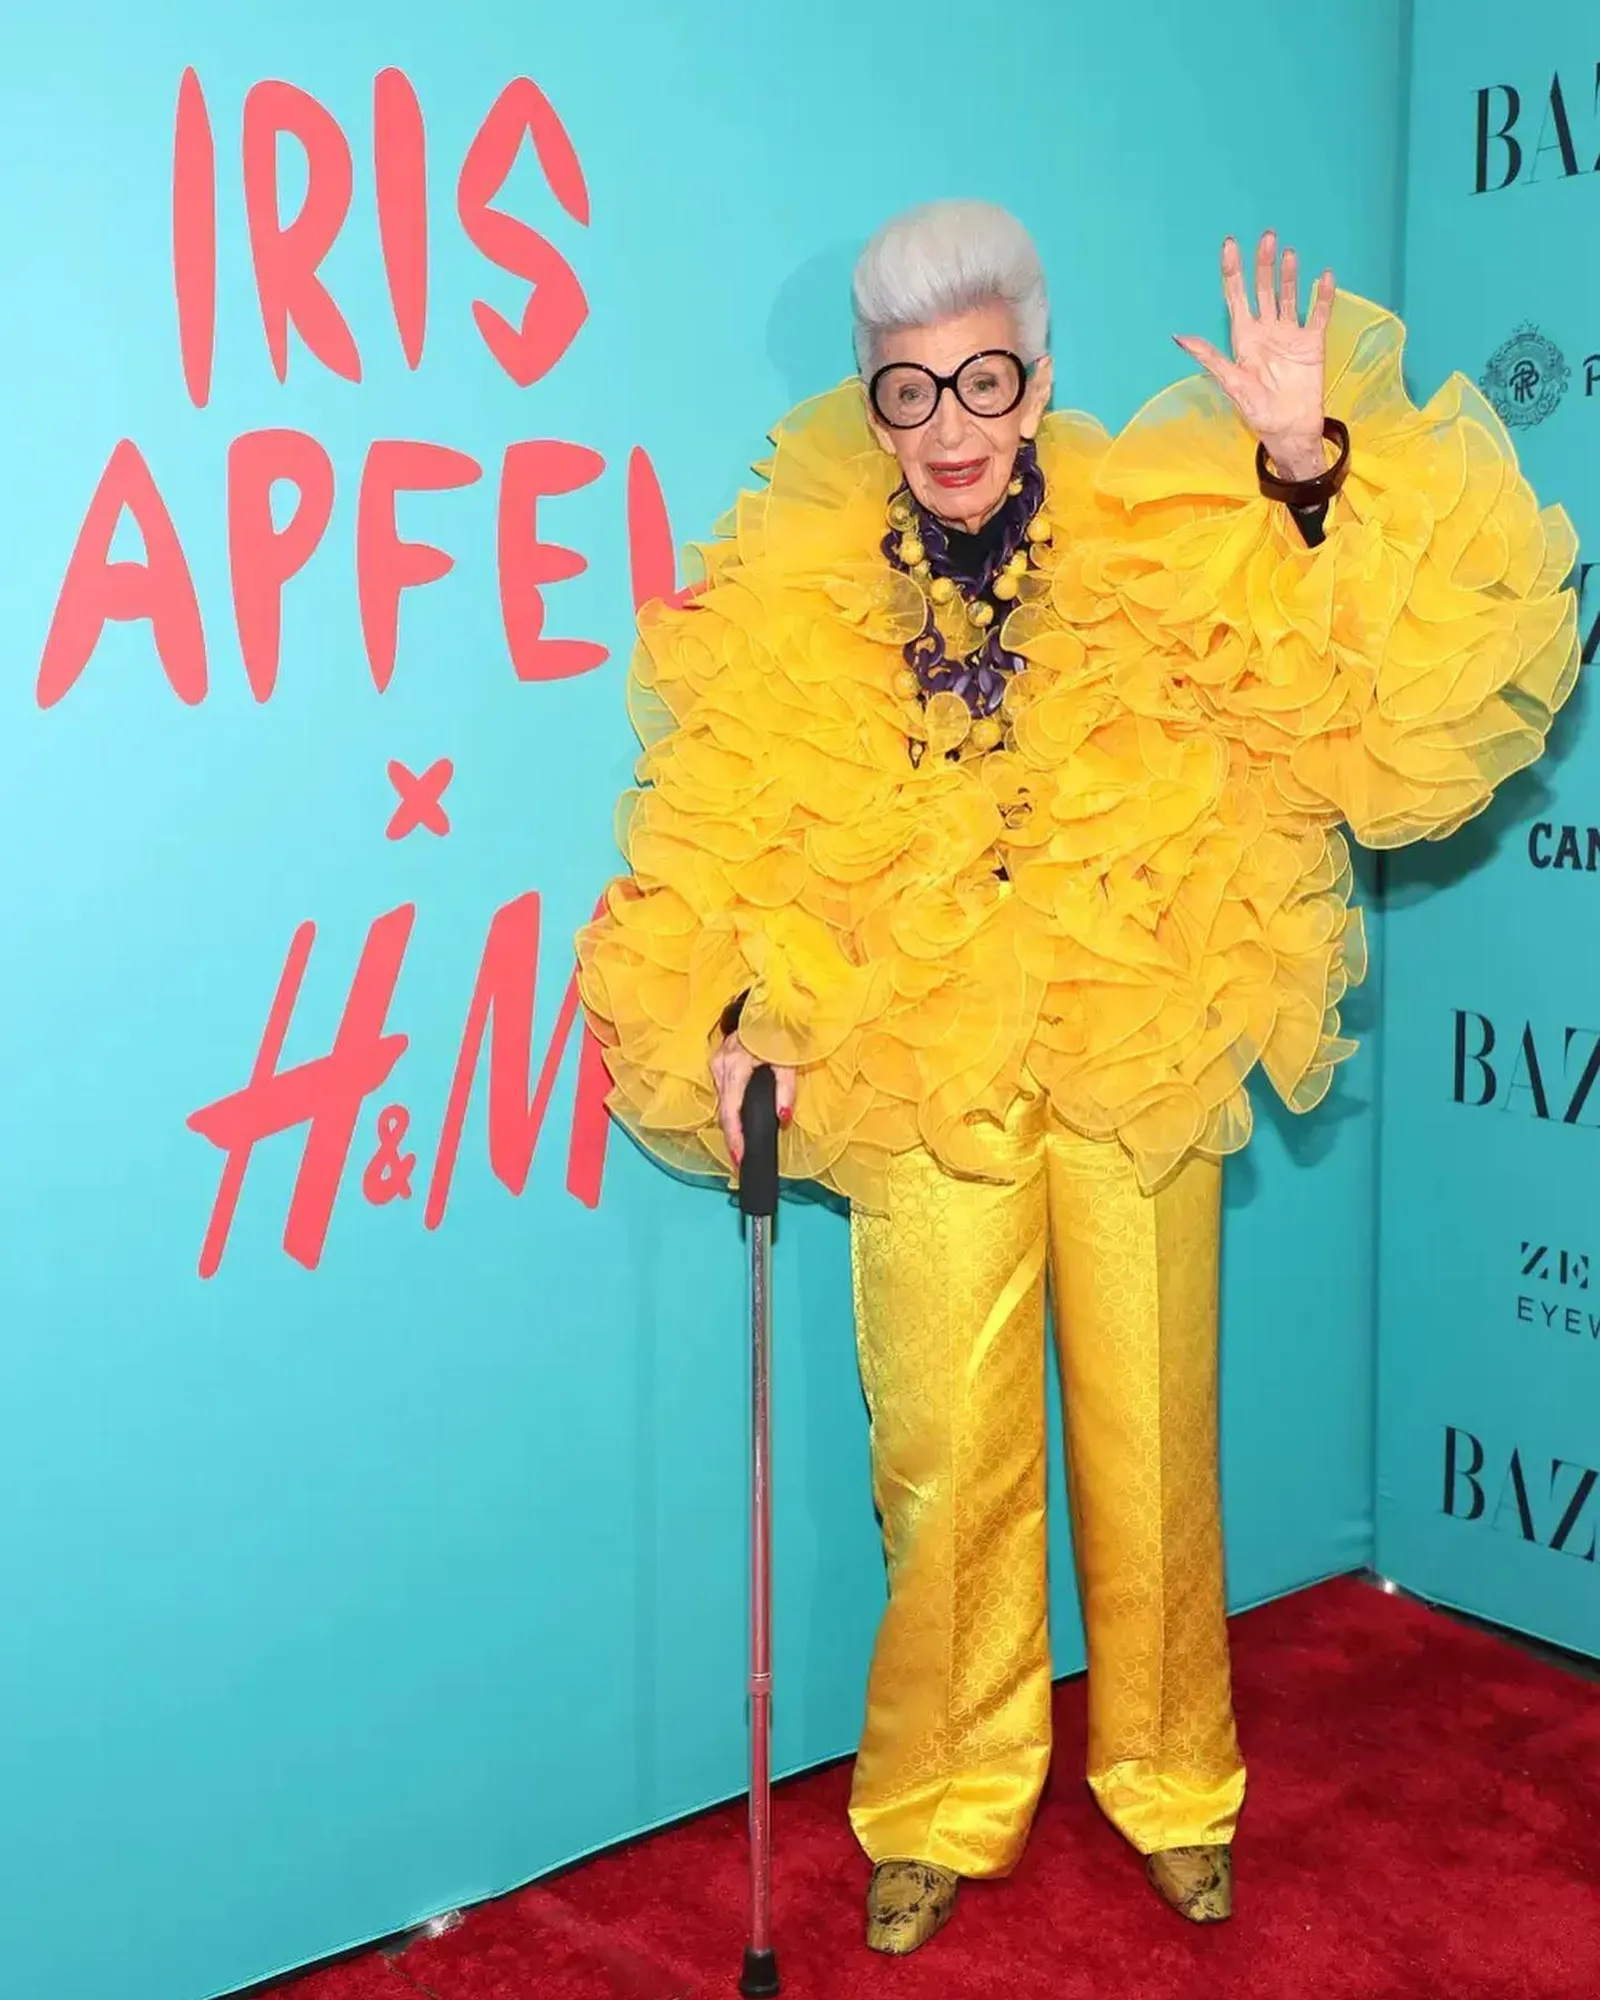 Ikon Fashion Amerika Iris Apfel Meninggal Dunia di Usia 102 Tahun